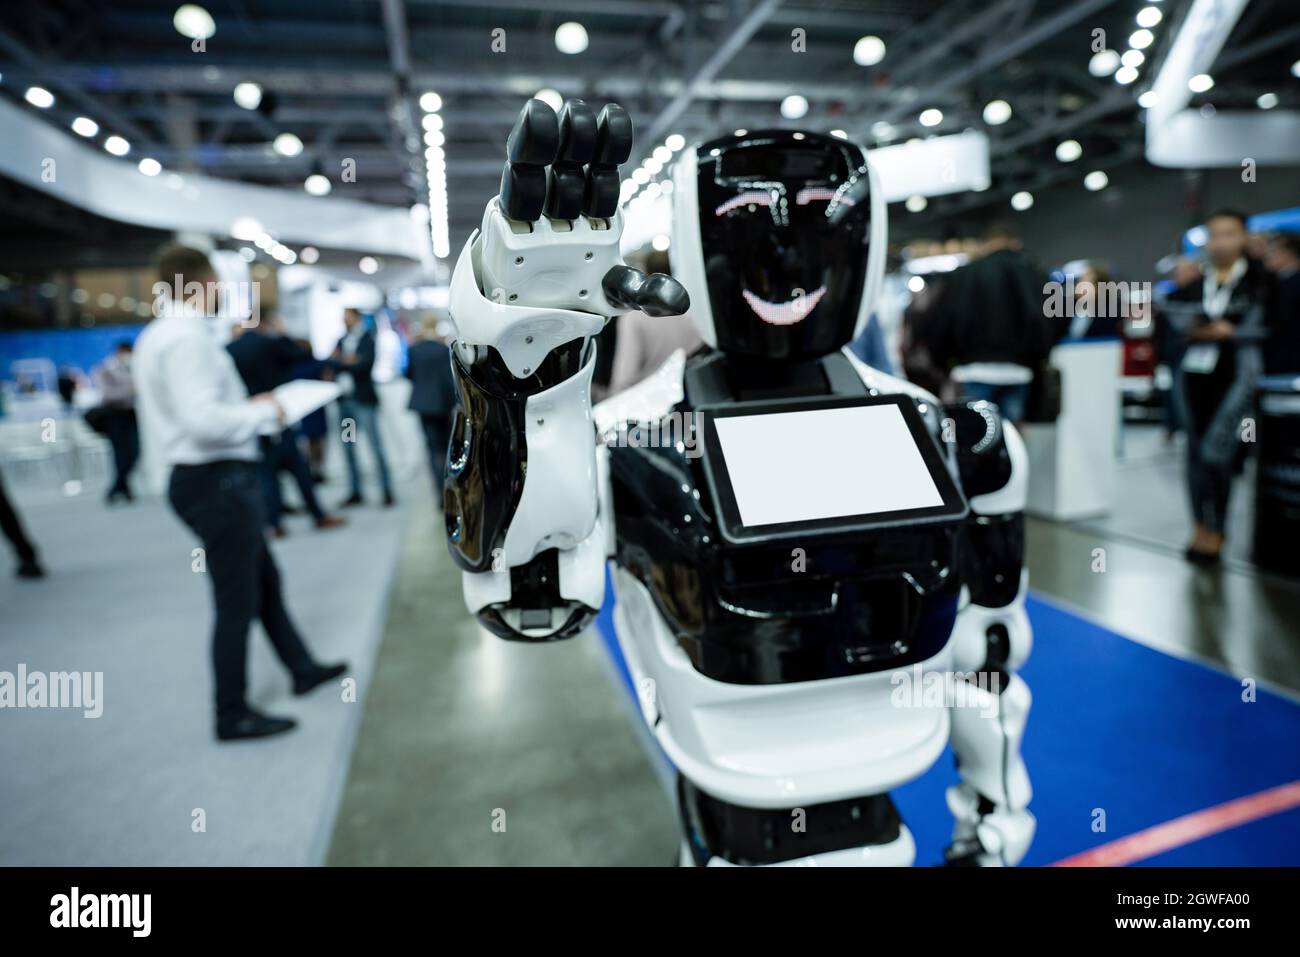 Robot de promoción con pantalla táctil saluda agitando la mano Foto de stock